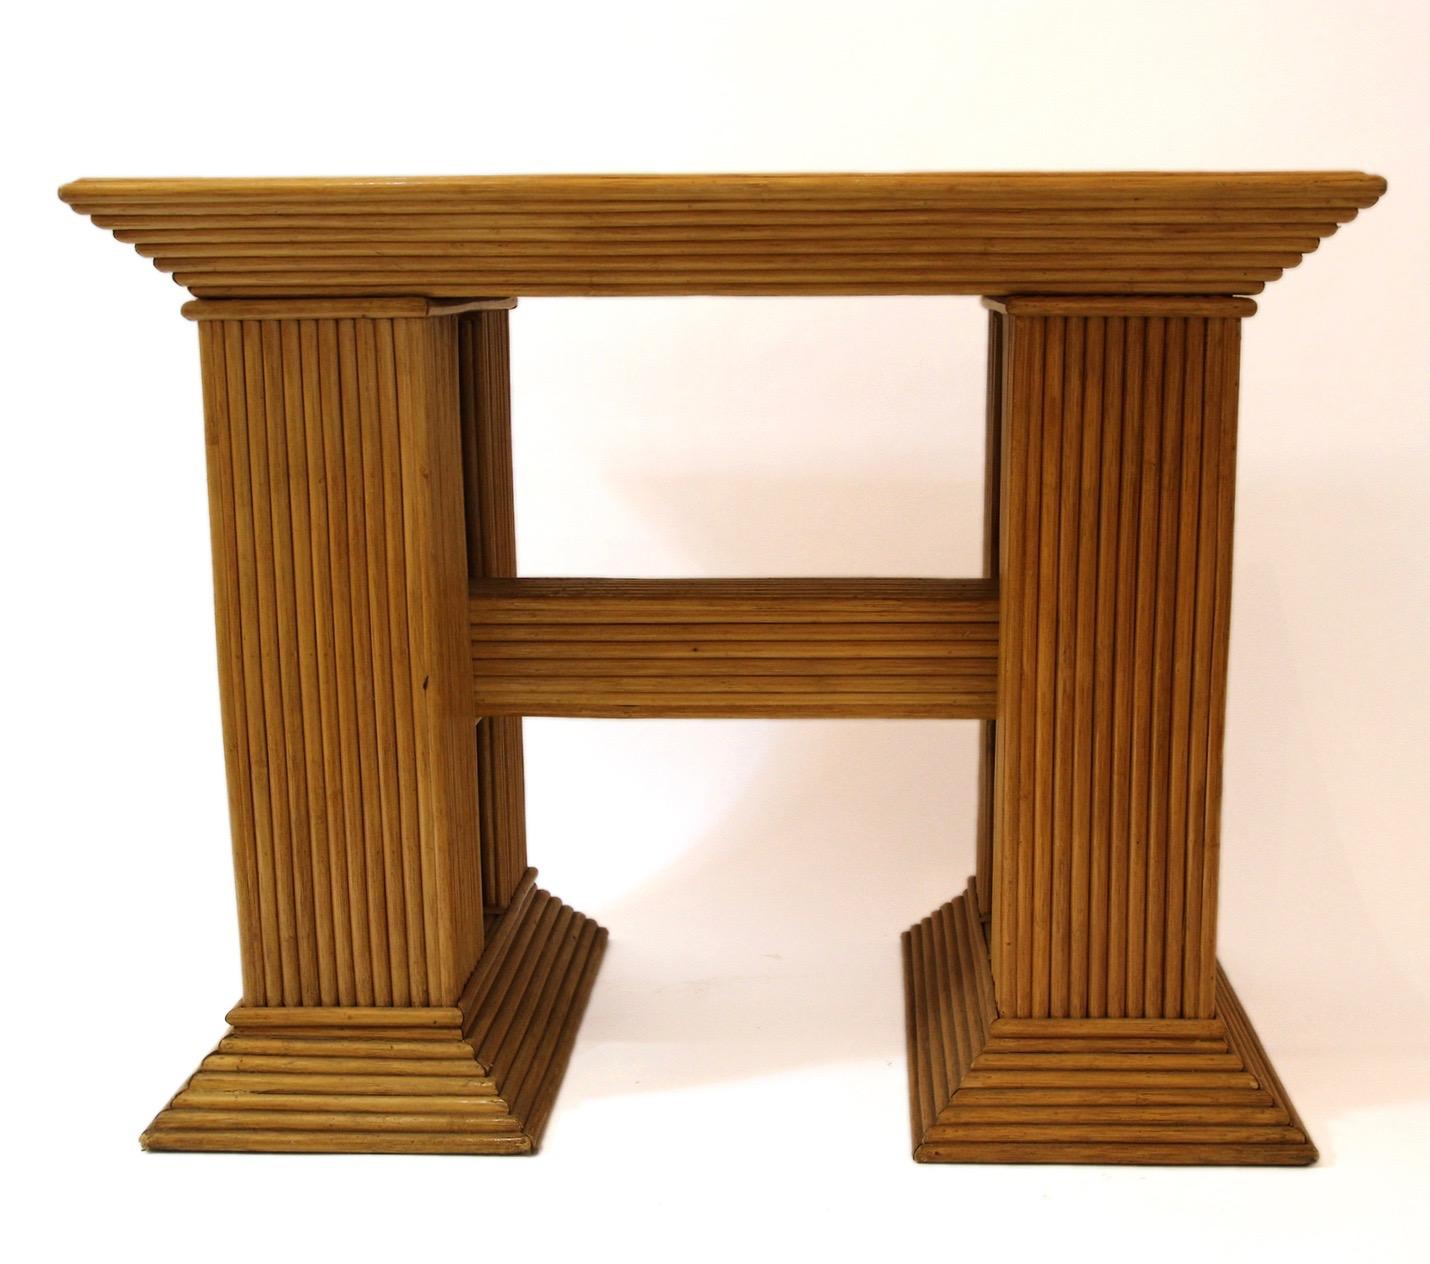 Konsole, 
Bambus, 
Rechteckiges Tablett, verziert mit Dreiecken,
H-Basis,
um 1970, Frankreich.

Maße: Höhe 71 cm, Breite 89 cm, Tiefe 50 cm.